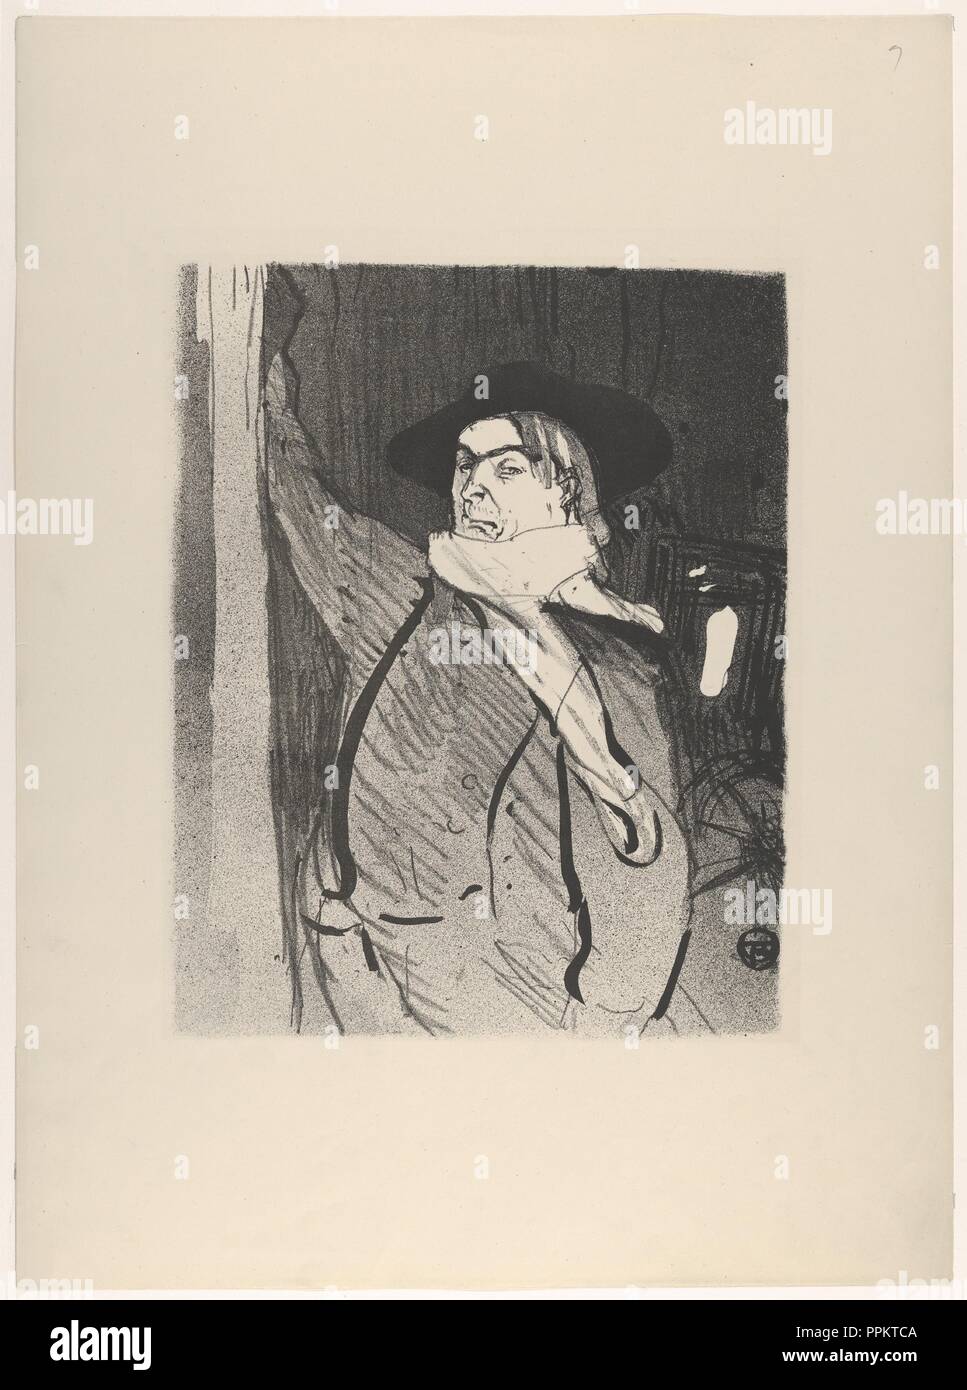 Aristide Bruant (from Le Café Concert). Artist: Henri de Toulouse-Lautrec (French, Albi 1864-1901 Saint-André-du-Bois). Dimensions: Image: 10 9/16 × 8 7/16 in. (26.8 × 21.5 cm)  Sheet: 17 5/16 × 12 5/8 in. (44 × 32 cm). Printer: Edward Ancourt (French, 19th century). Publisher: l'Estampe Originale. Series/Portfolio: Le Café Concert; suite of eleven lithographs. Date: 1893. Museum: Metropolitan Museum of Art, New York, USA. Stock Photo